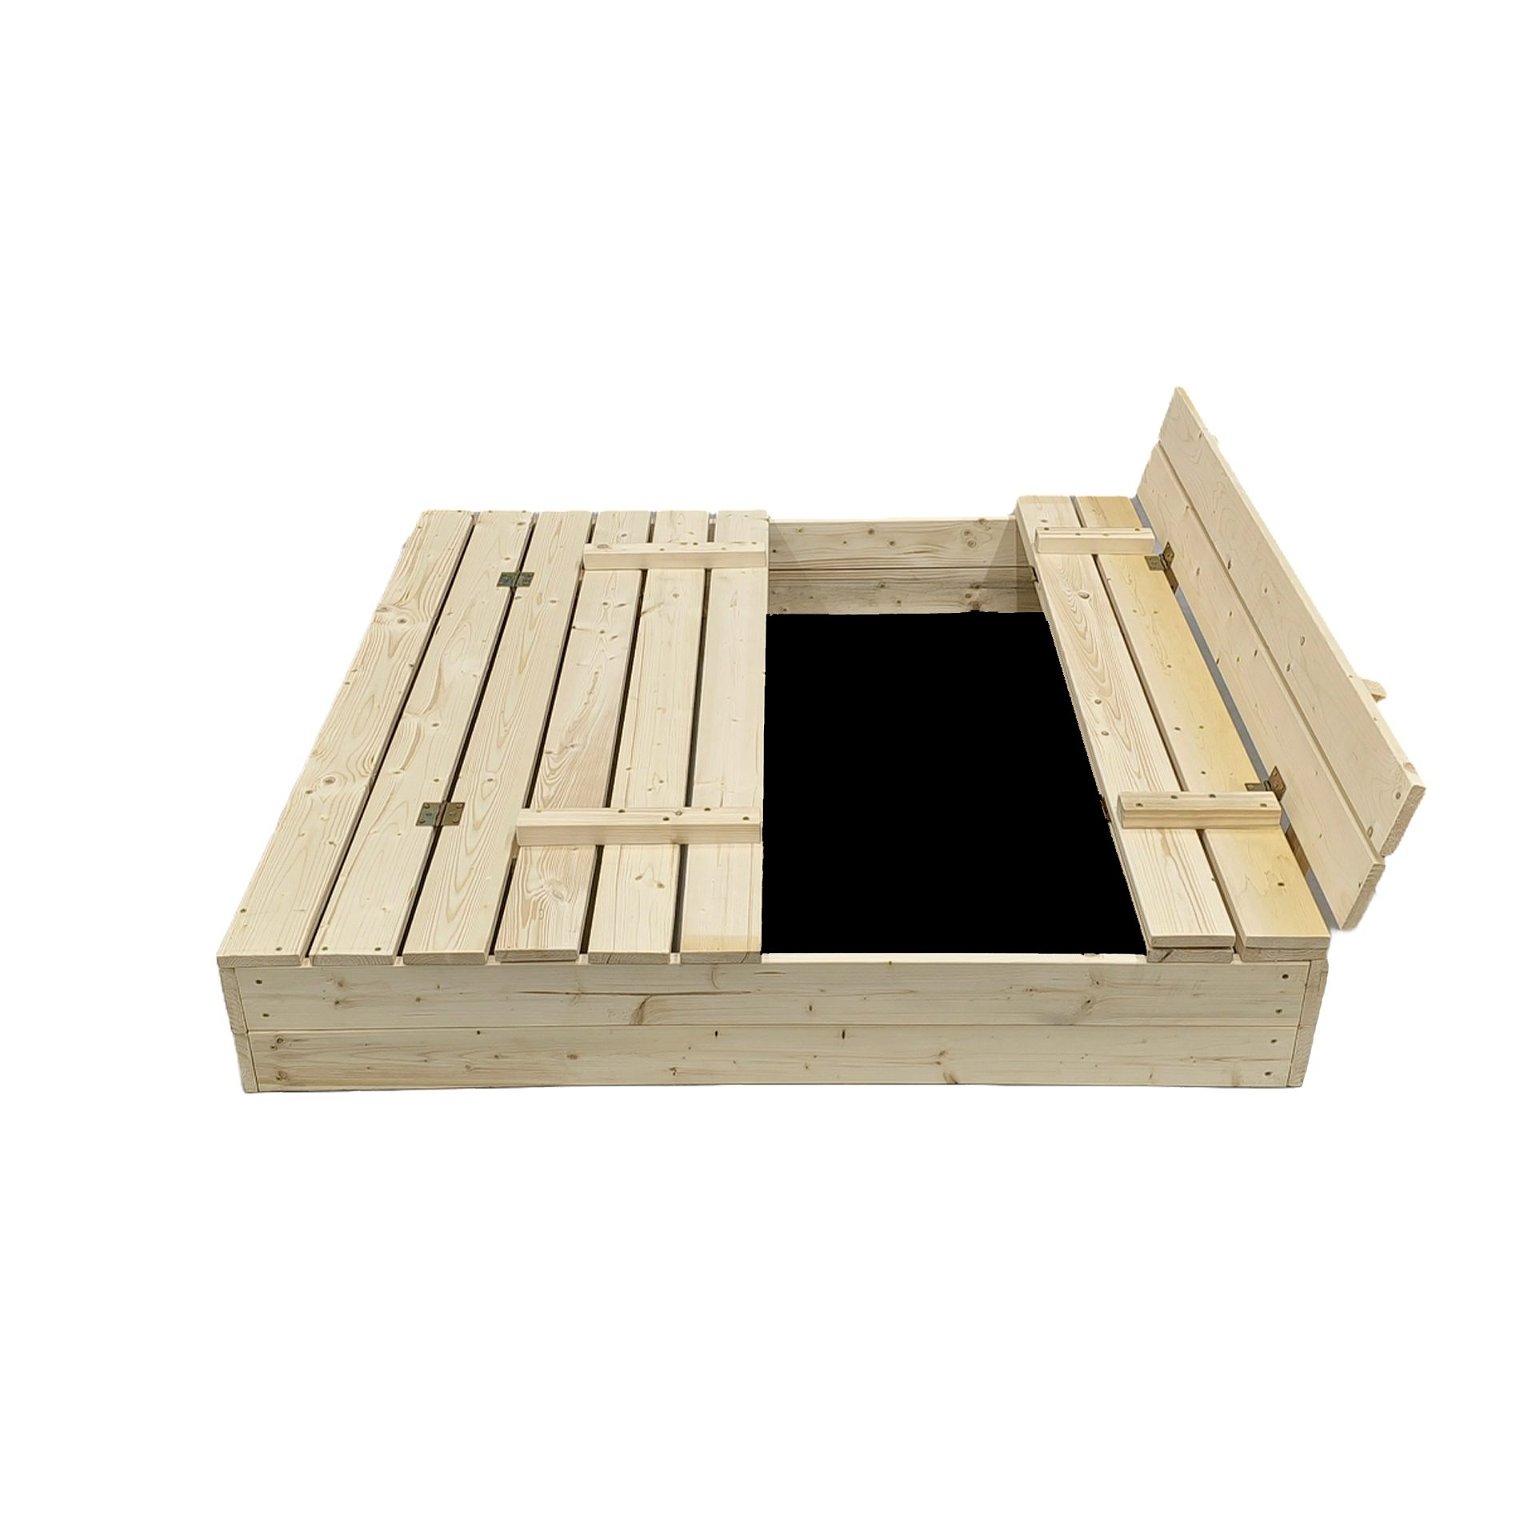 Smėlio dėžė Bonus Orbis su patiesalu ir 250 kg smėlio,120x120 cm - 3